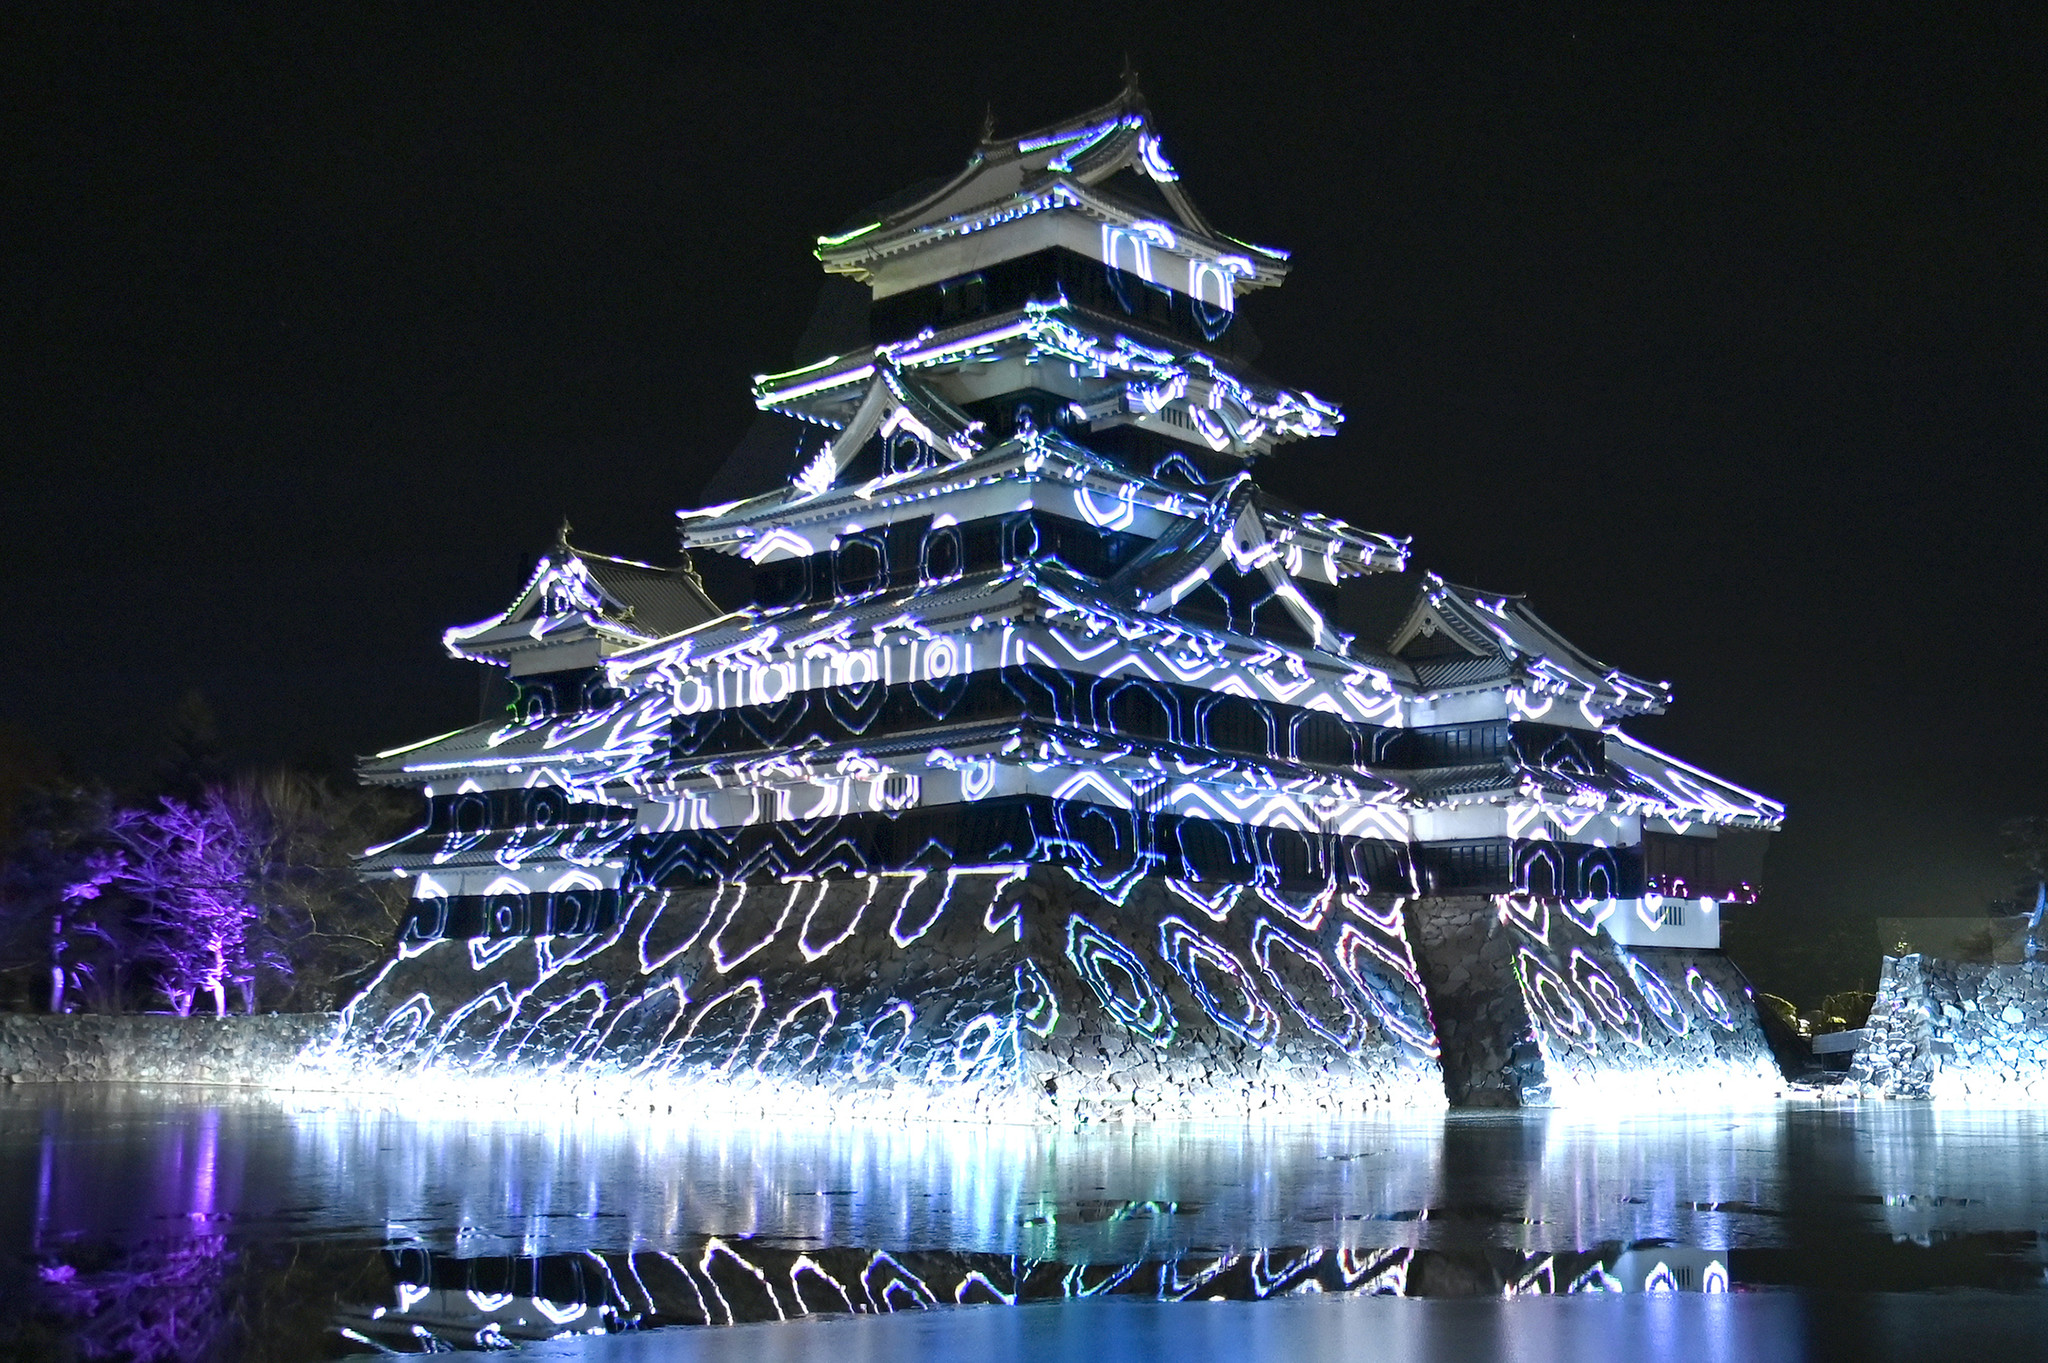 国宝松本城を舞台にしたレーザーと光による新しい演出 松本城 氷晶きらめく水鏡 にて氷彫フェスティバル特別演出が22年1月16日より実施 Tokyo Lighting Design 合同会社のプレスリリース